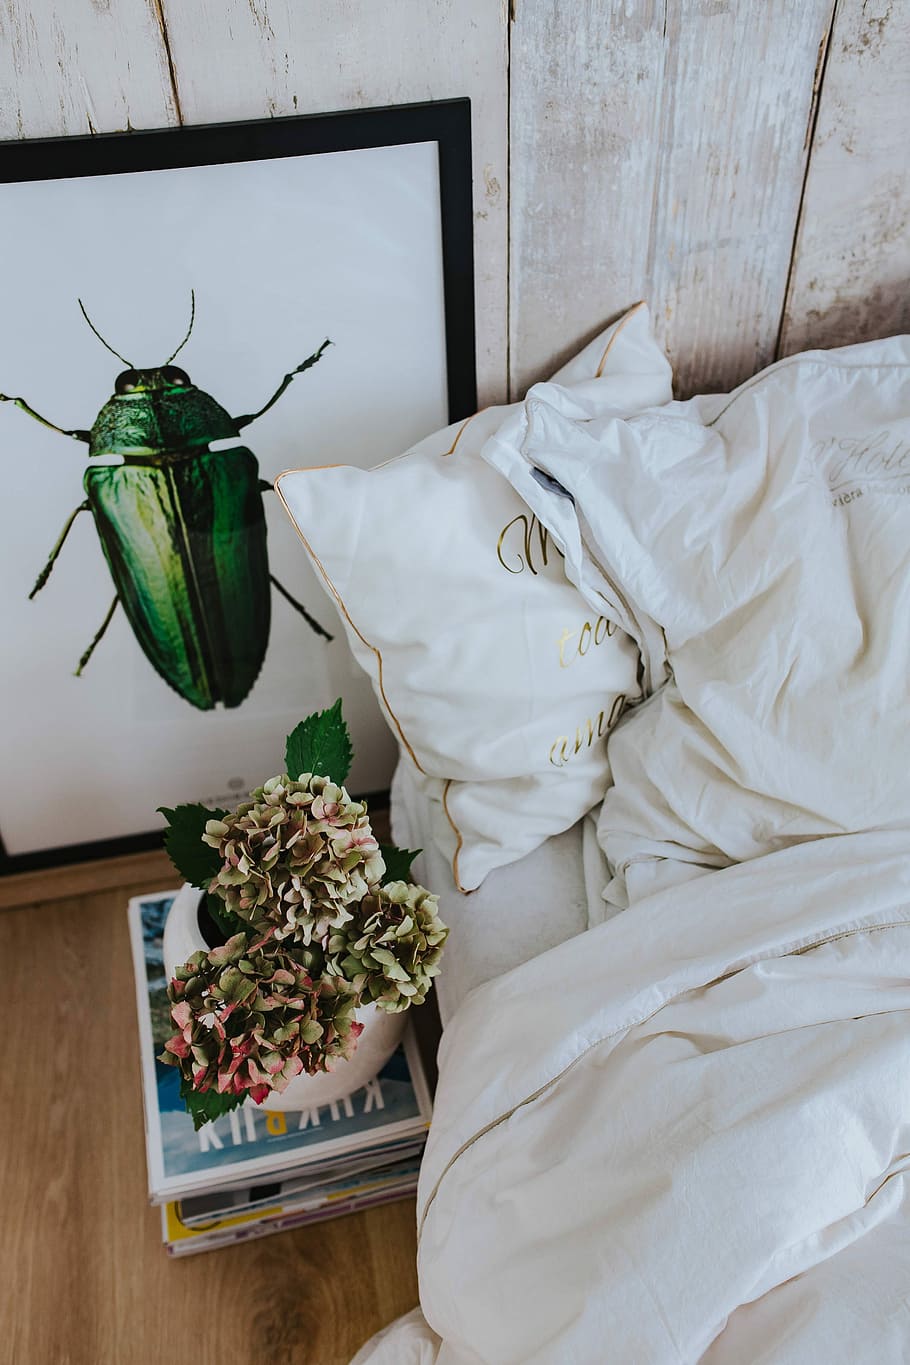 sábanas, imagen, verde, escarabajo, maceta, pila, revistas, blanco, cama, ropa de cama